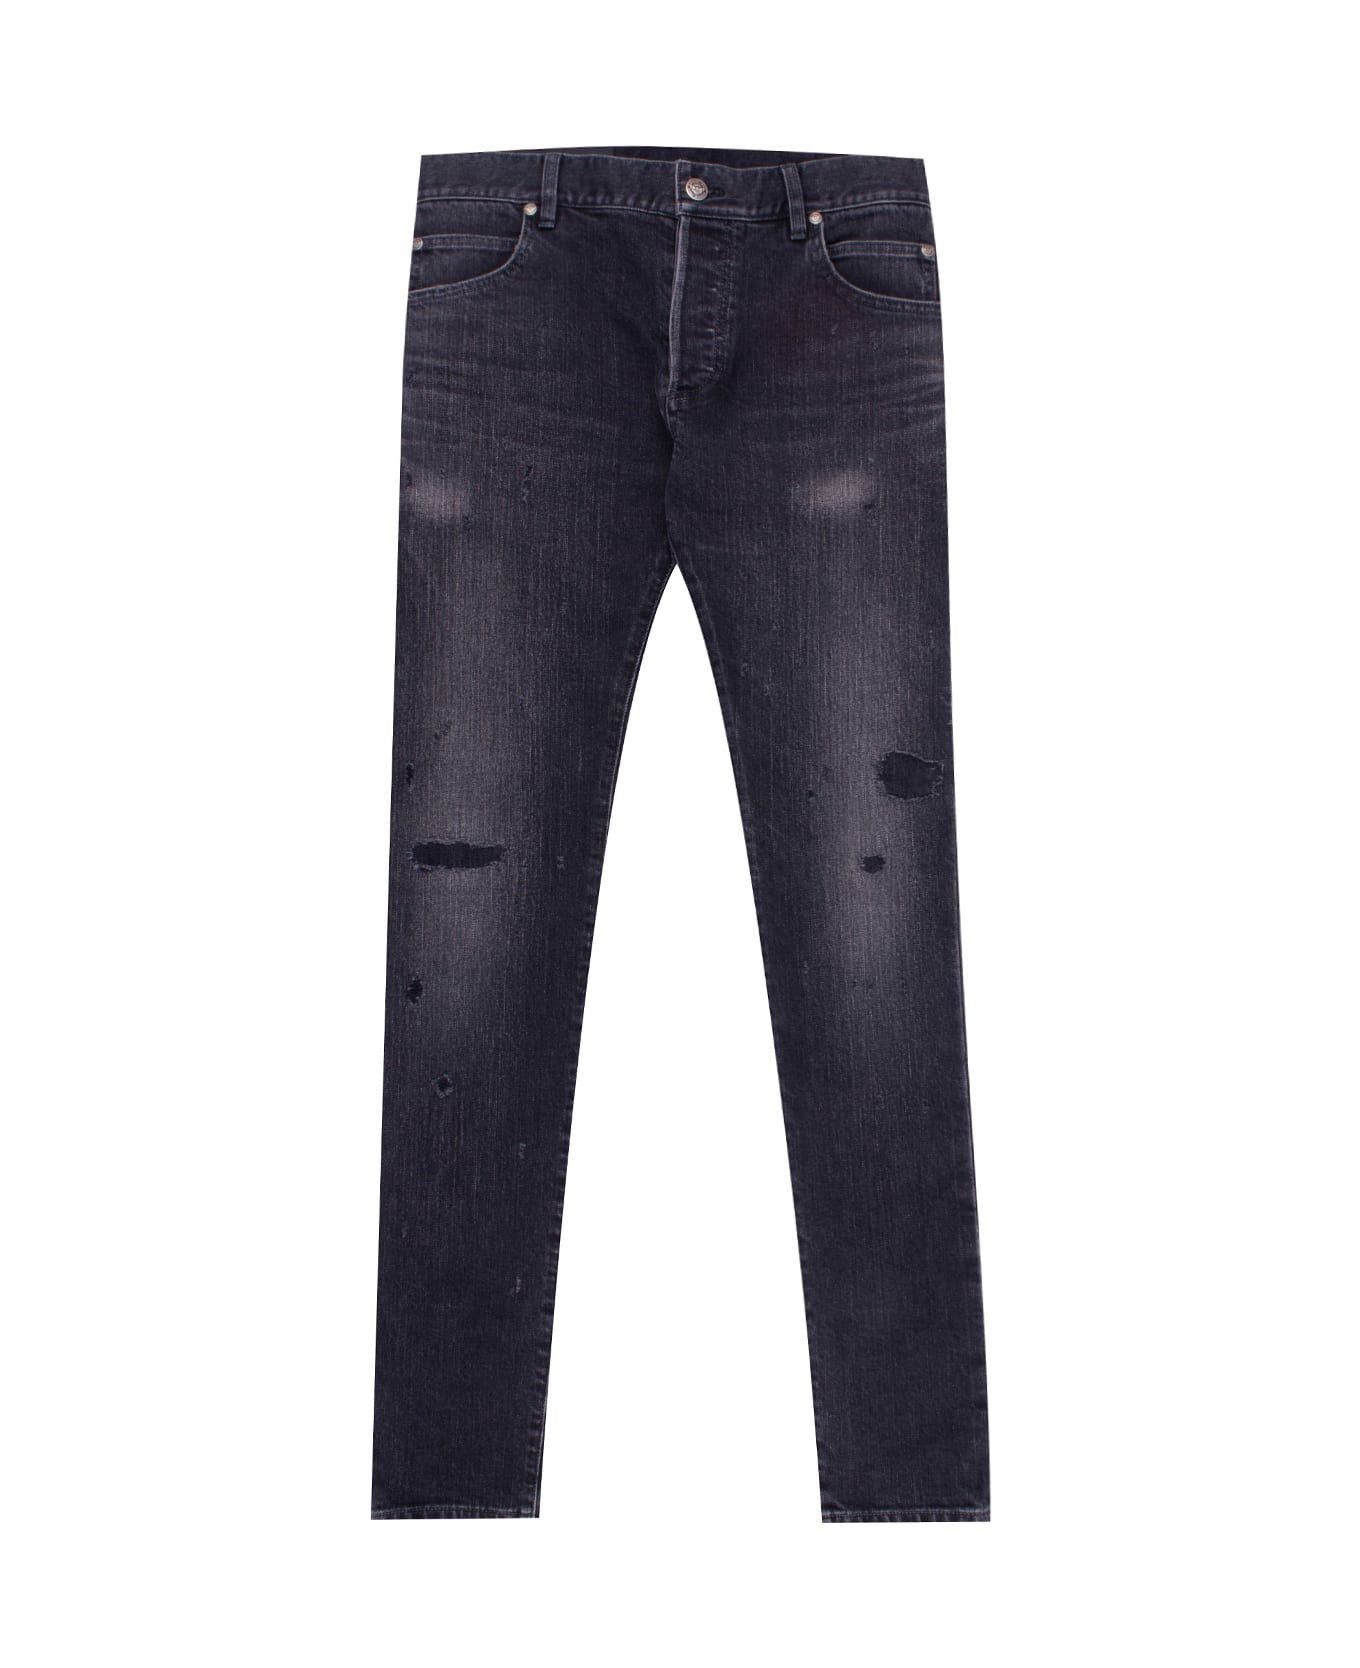 Balmain Cotton Jeans - Black